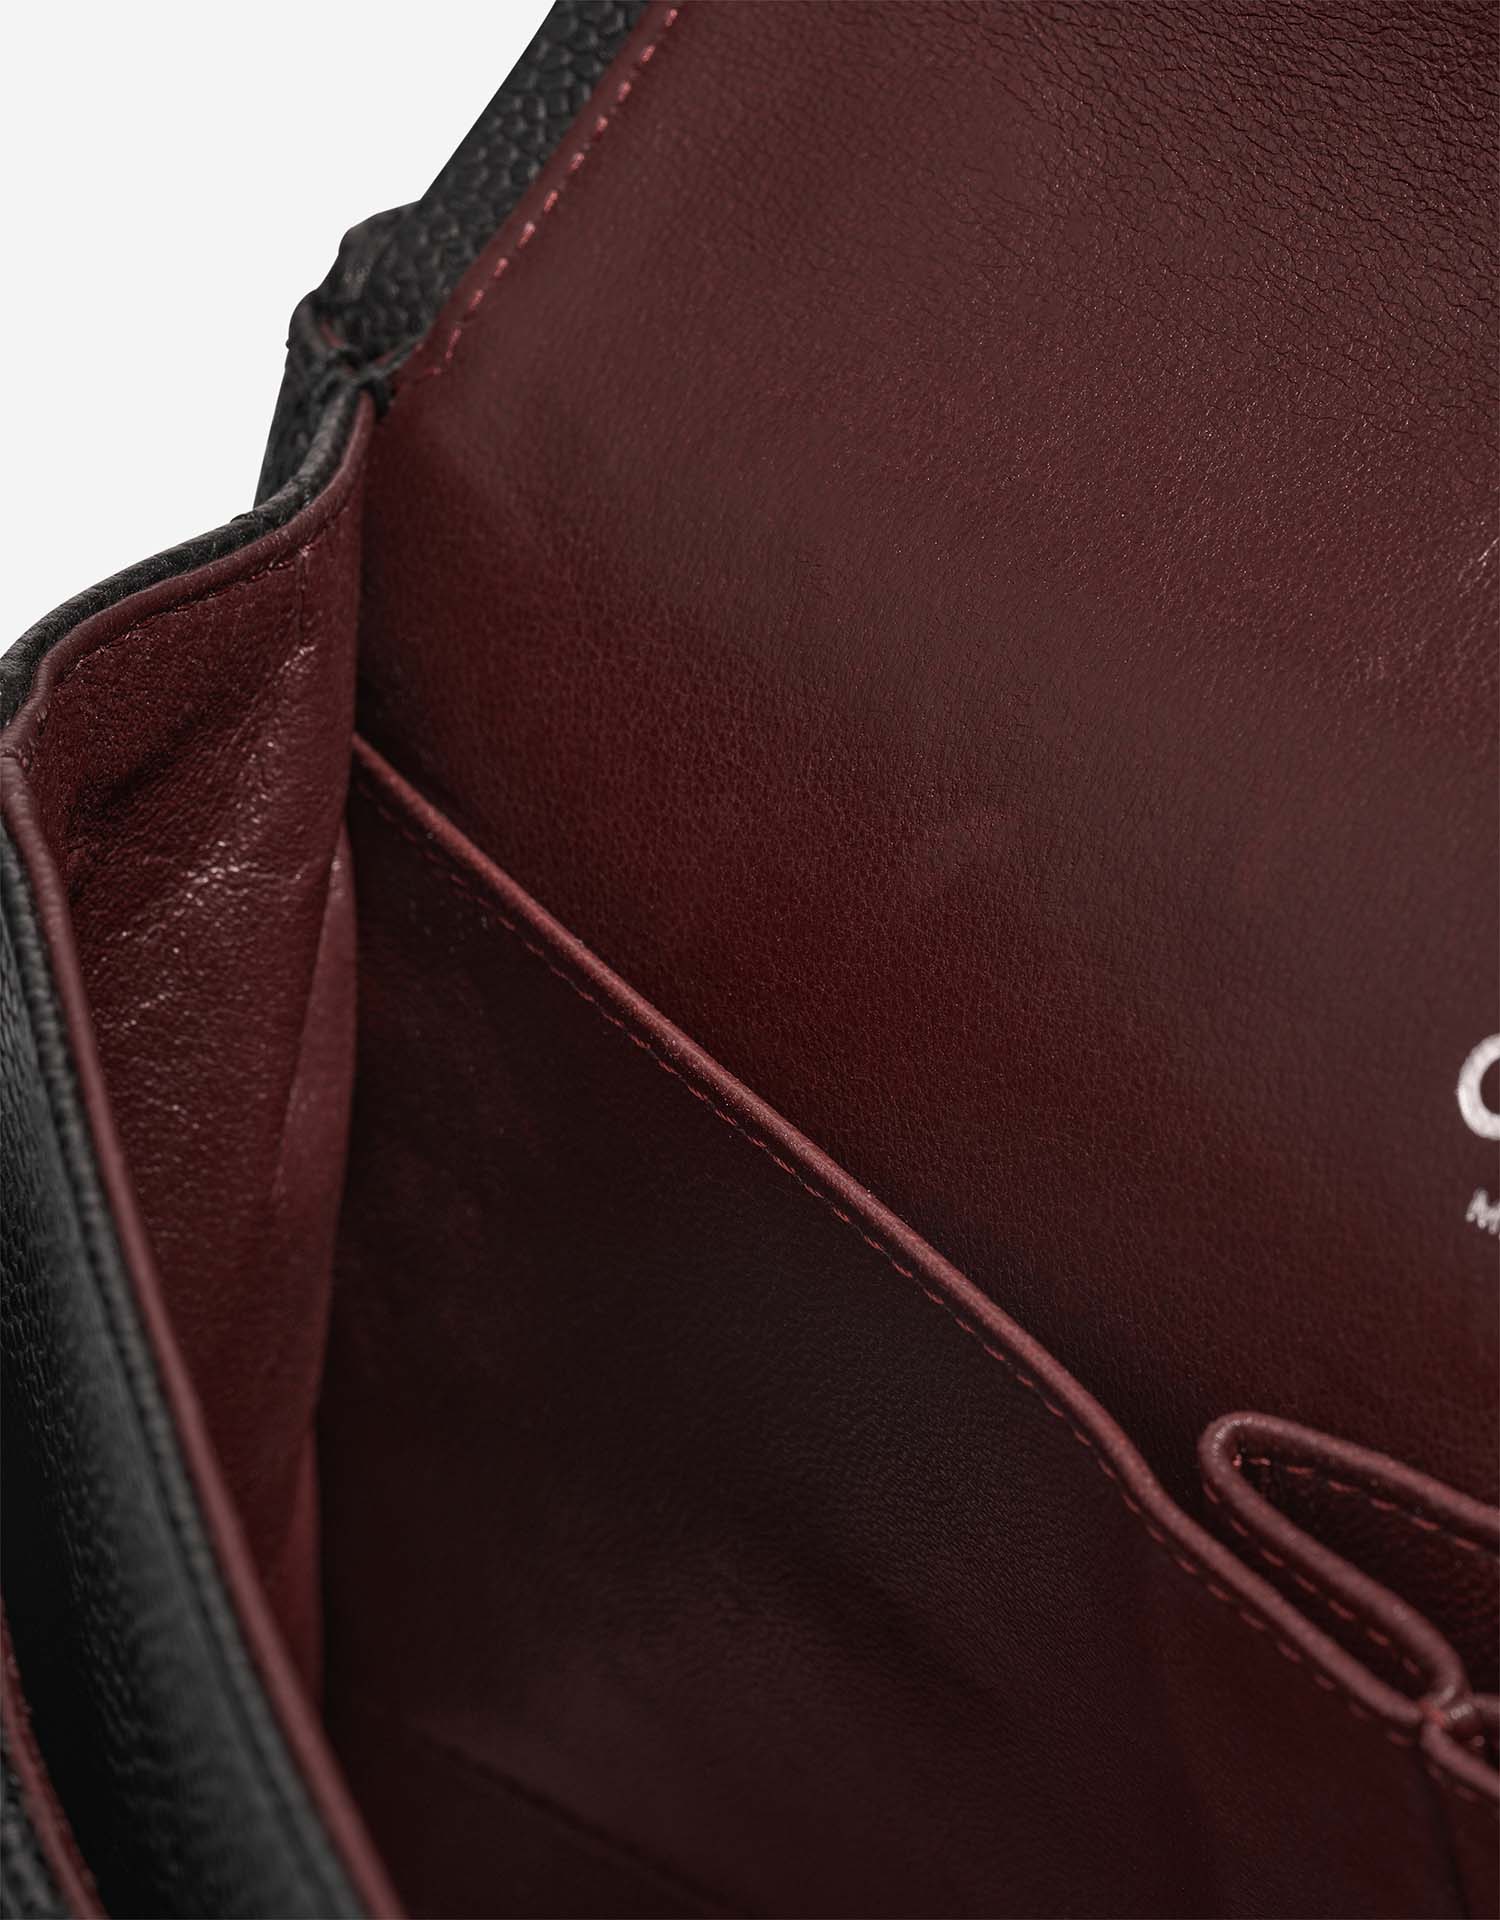 Chanel Timeless Medium Schwarz Gebrauchsspuren | Verkaufen Sie Ihre Designer-Tasche auf Saclab.com